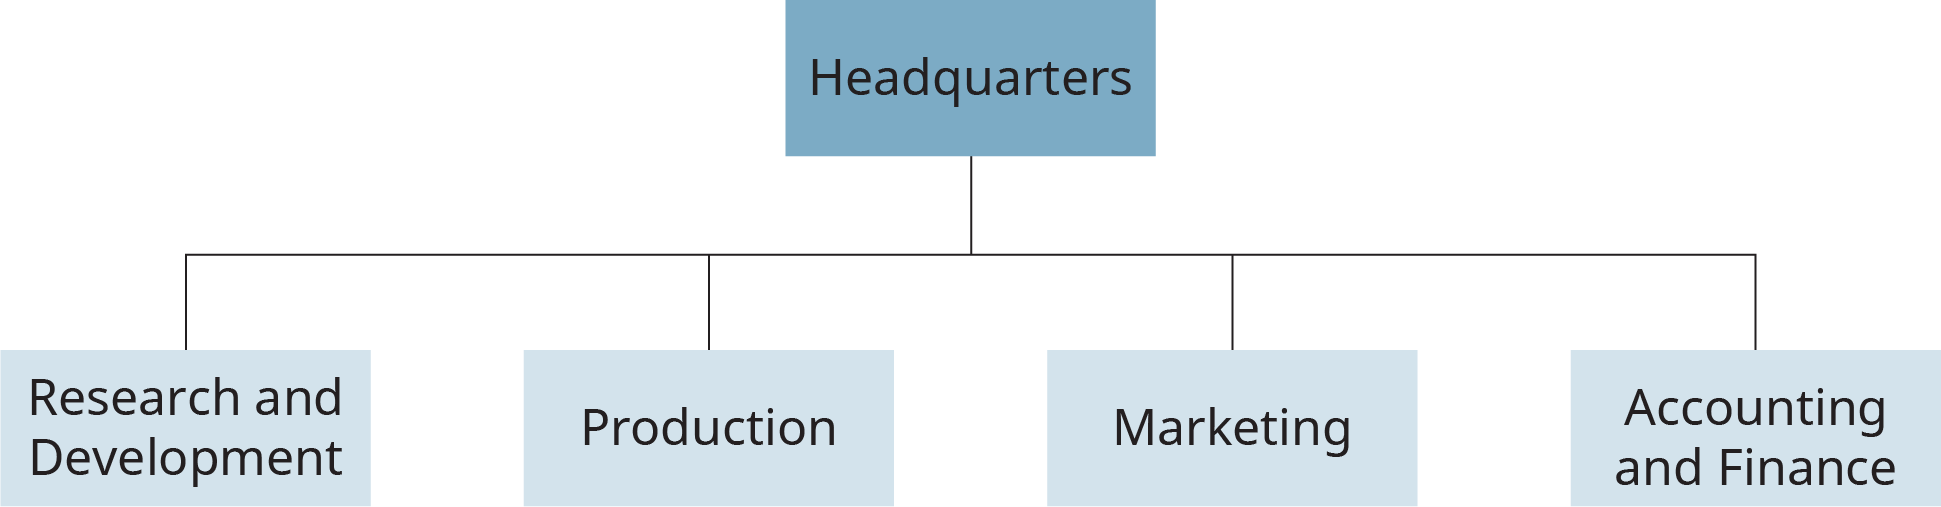 Un diagrama de flujo muestra un ejemplo de una estructura funcional en una organización. Muestra la rama principal etiquetada como “Sede” dividida en cuatro subramas etiquetadas, “Investigación y Desarrollo”, “Producción”, “Mercadotecnia” y “Contabilidad y Finanzas”.